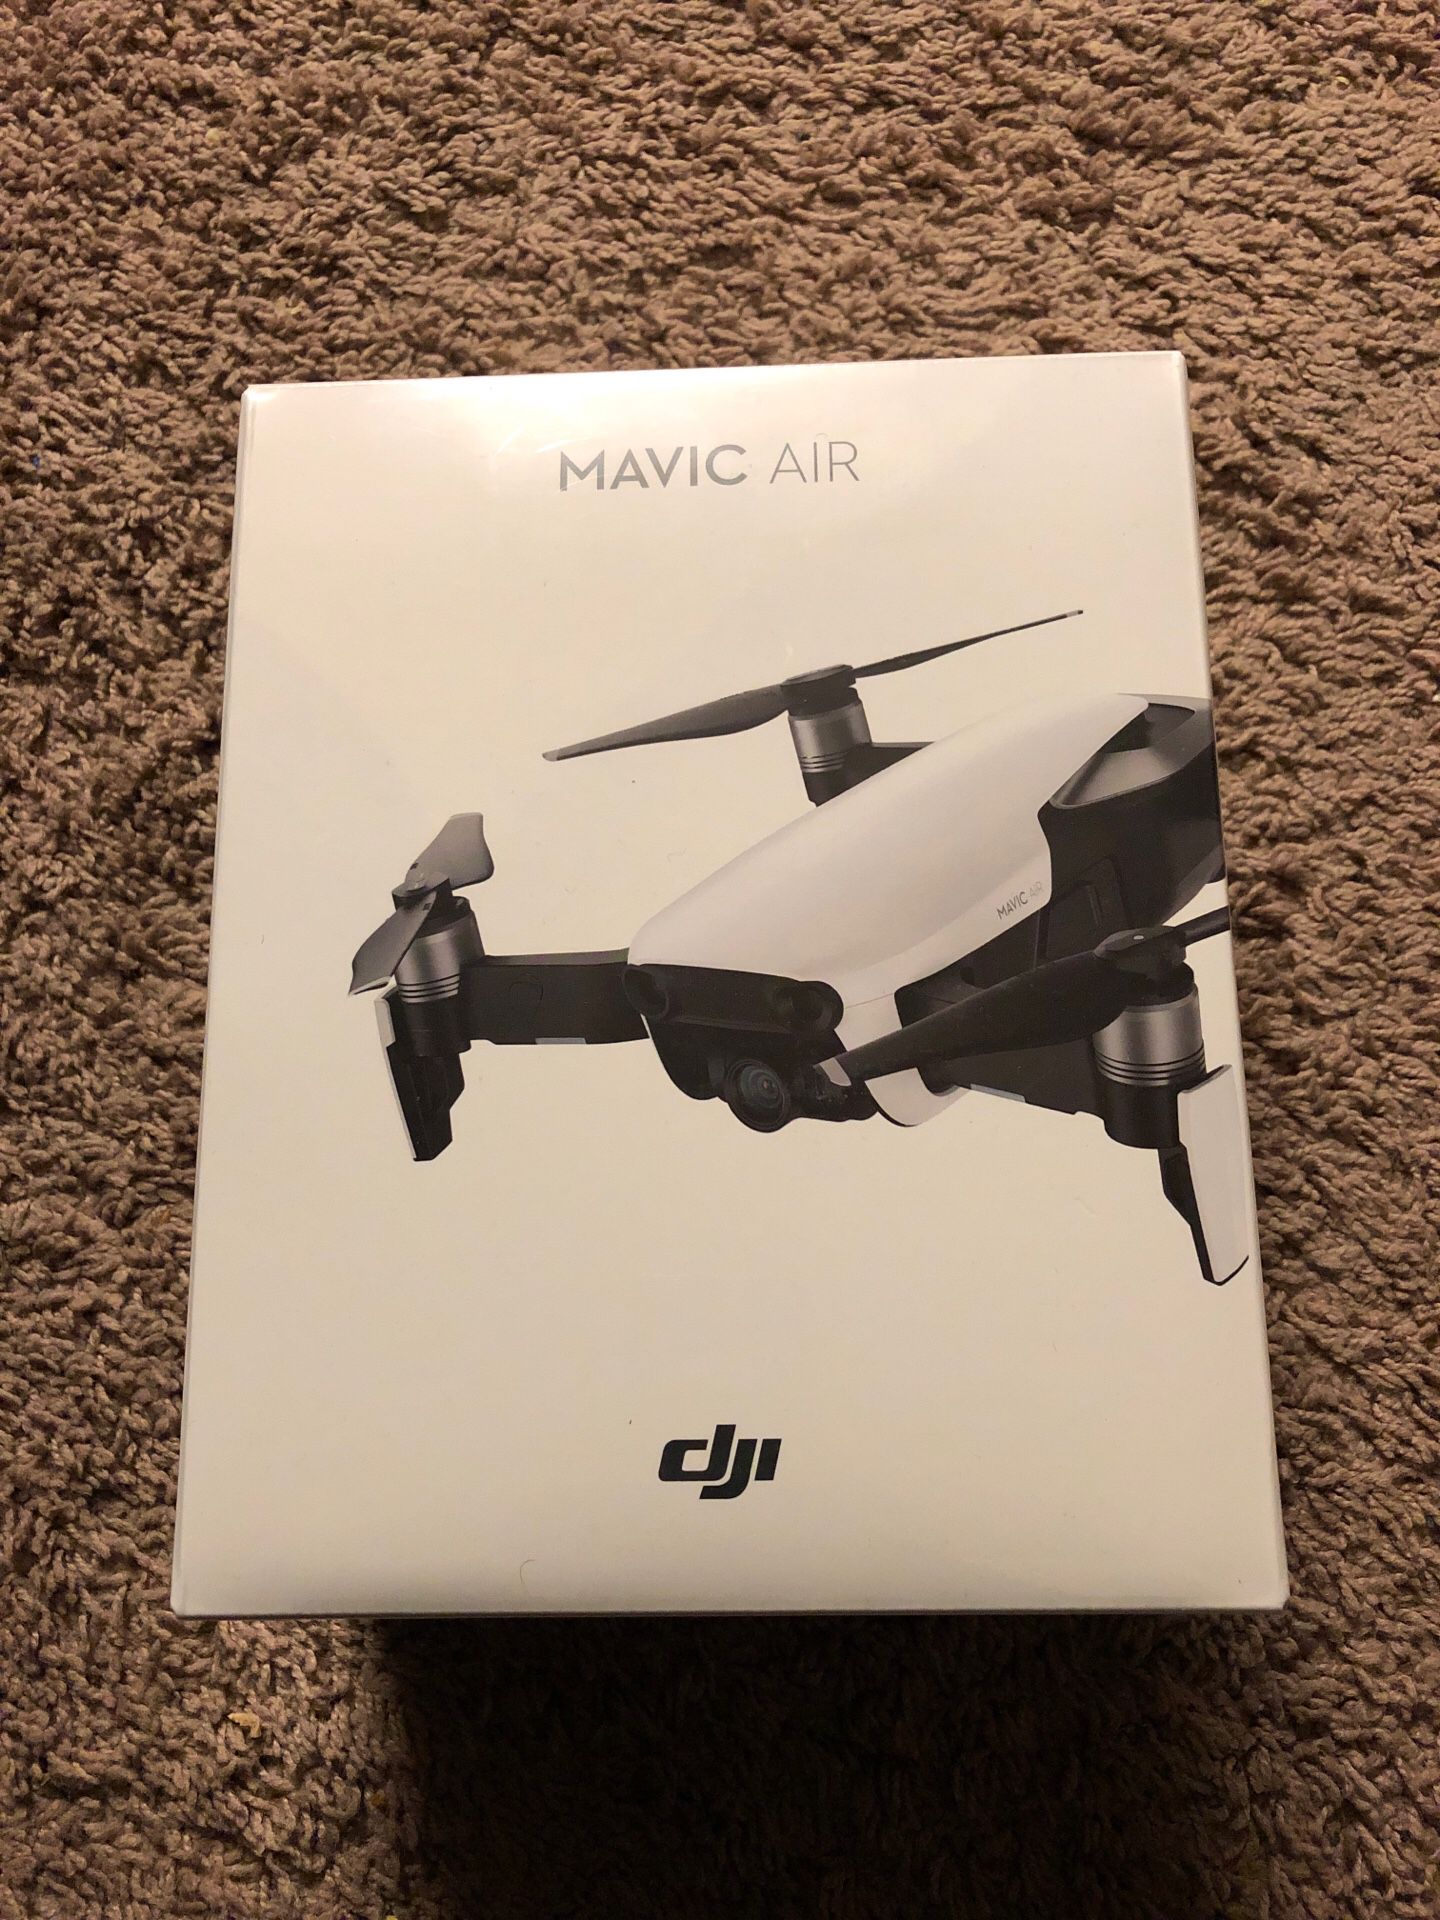 Brand New Mavic Air drone